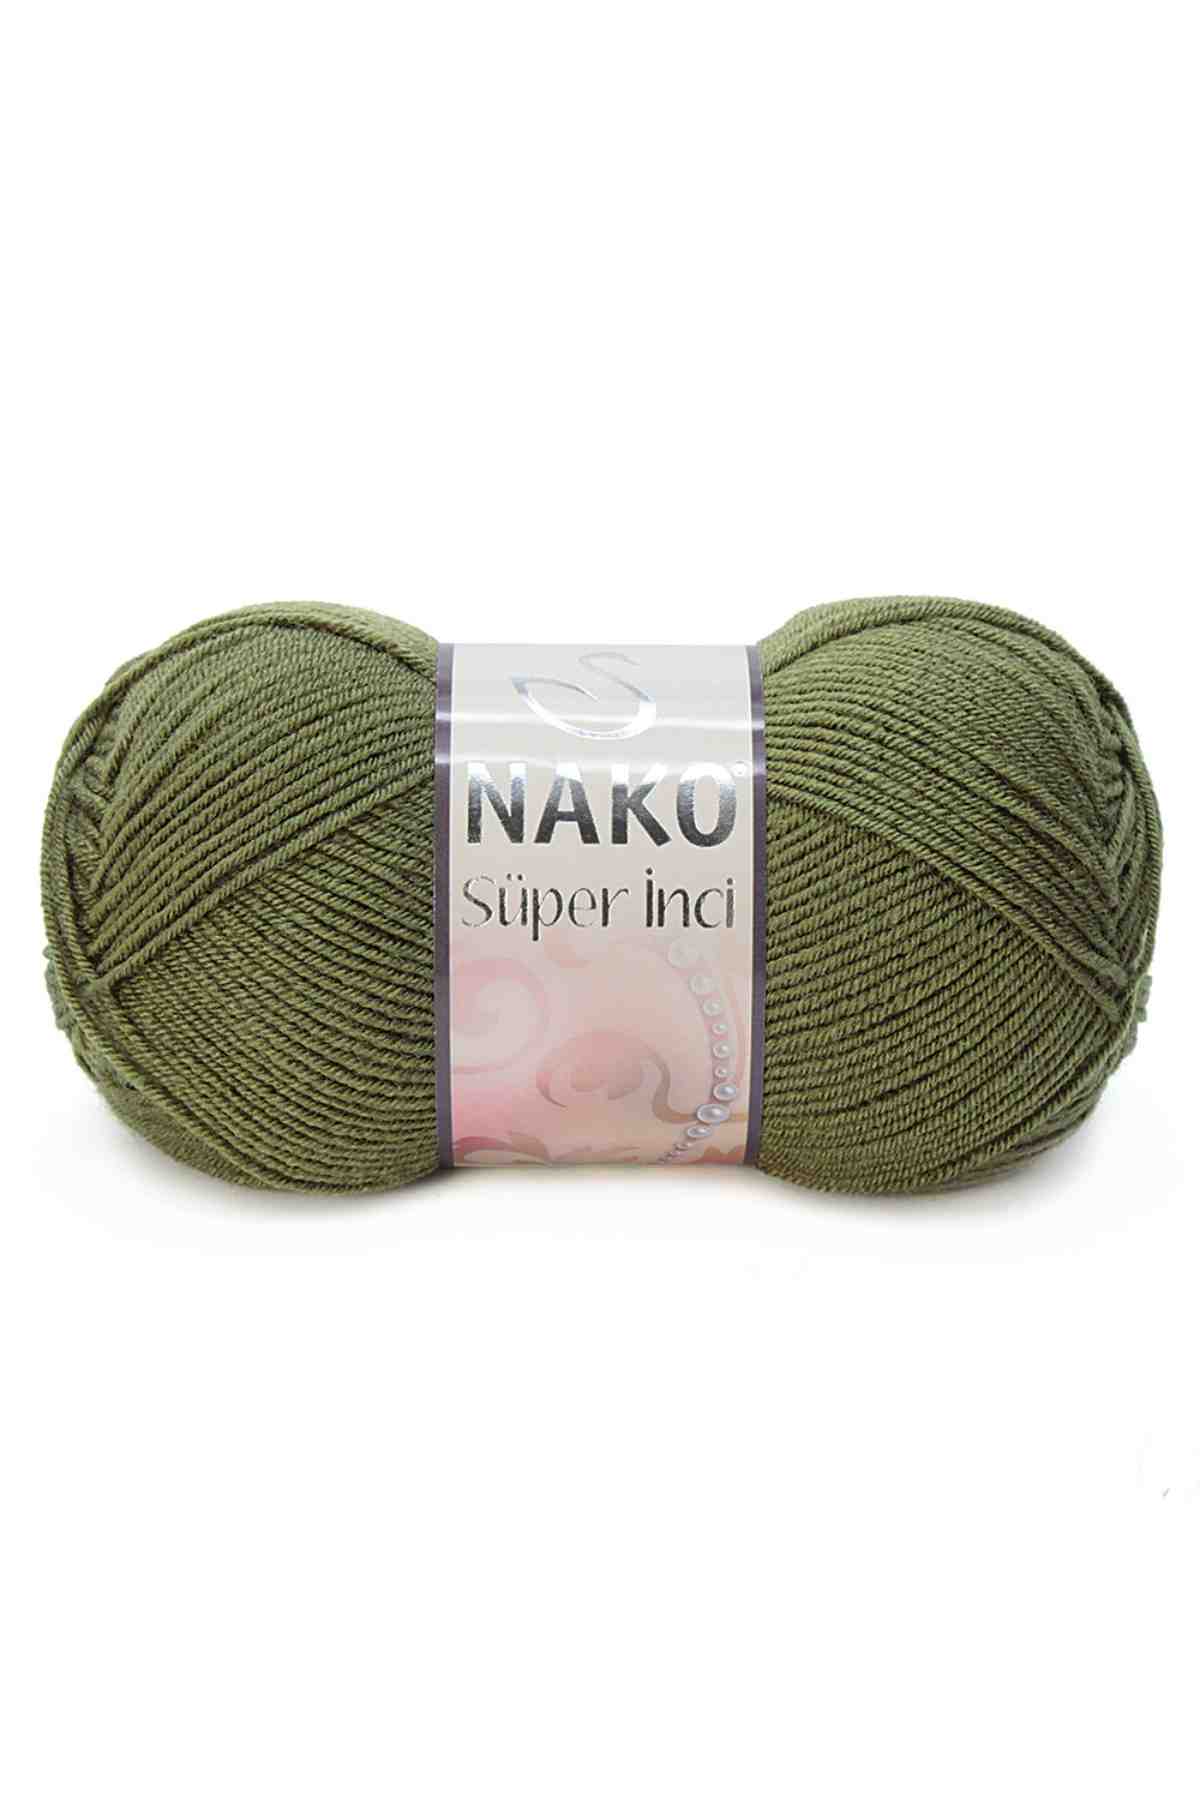 Nako Süper İnci Wool Yarn